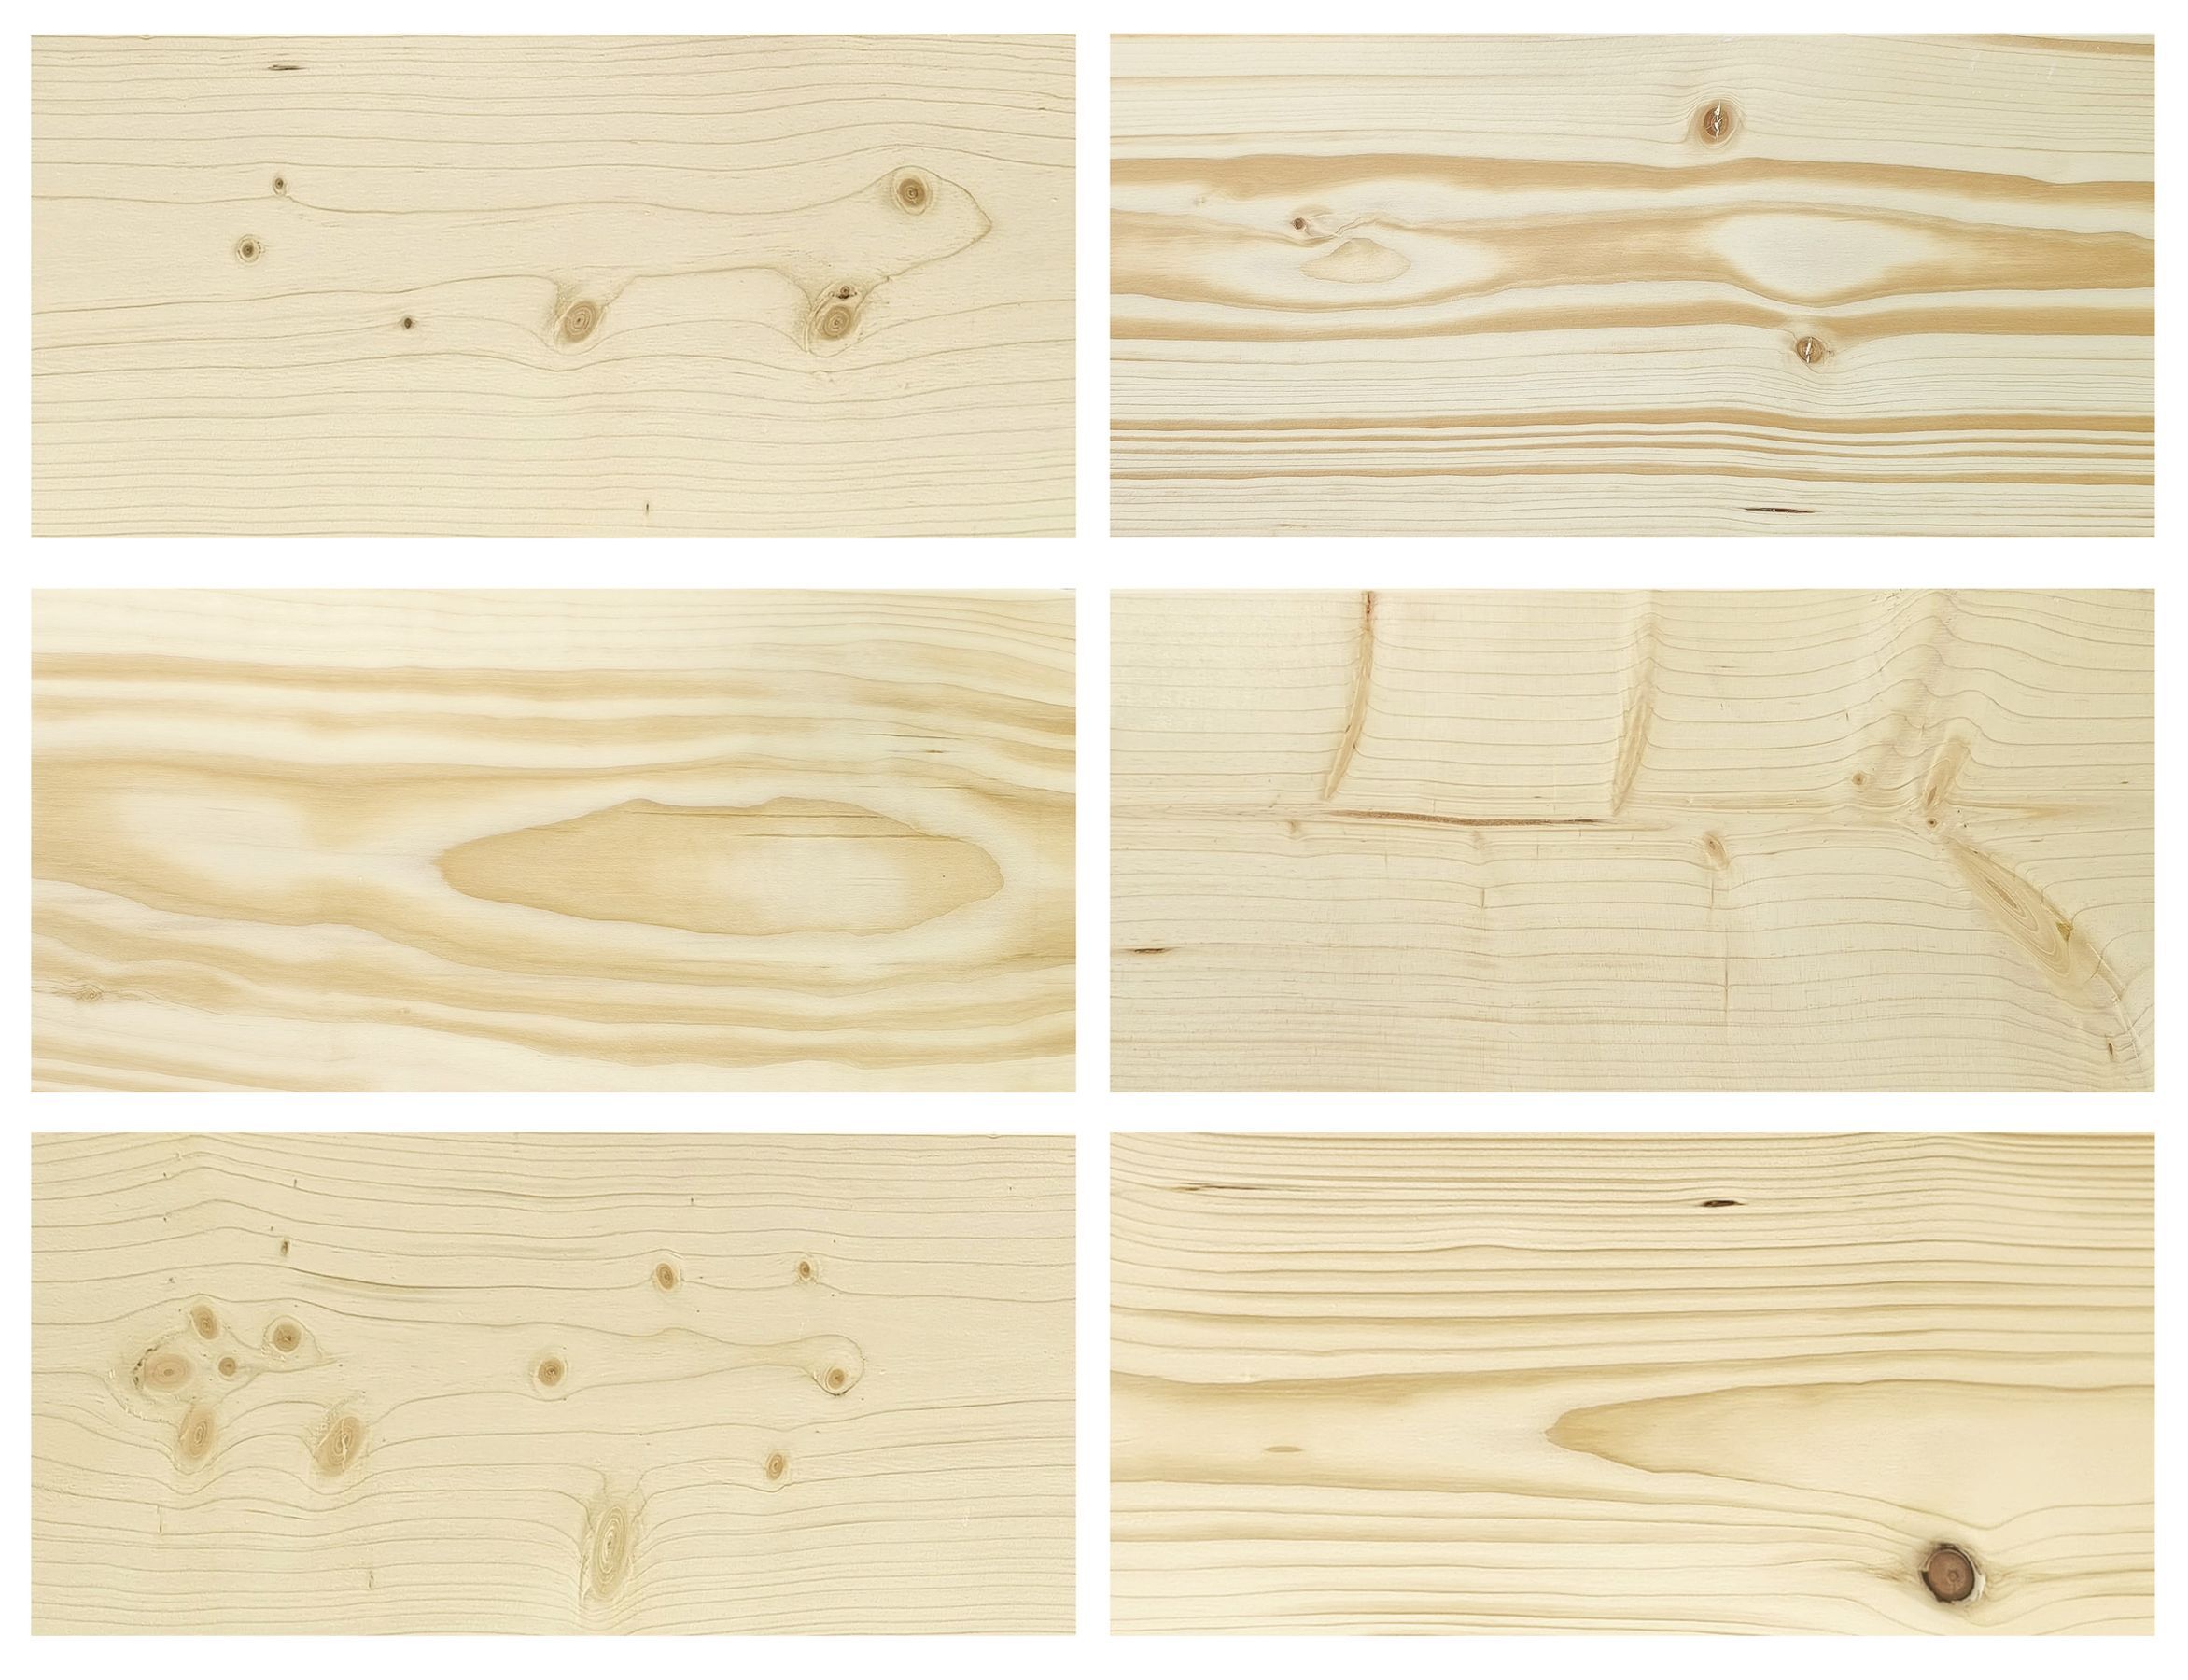 Detailbilder der Fichtenholzmaserung